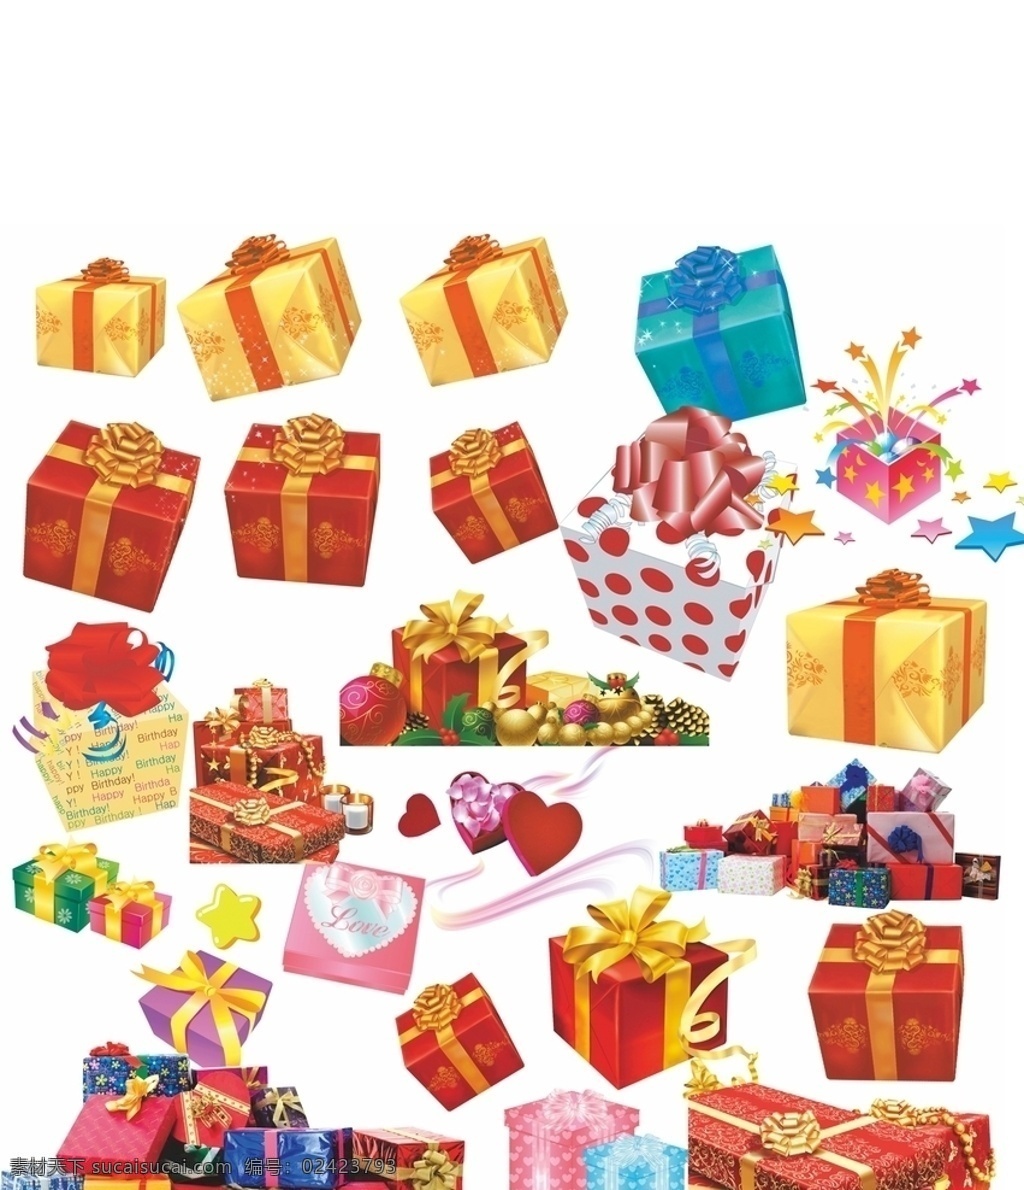 礼品 礼品元素 地产礼品 活动礼品 活动元素 礼盒元素 各种礼品礼盒 摄影模板 其他模板